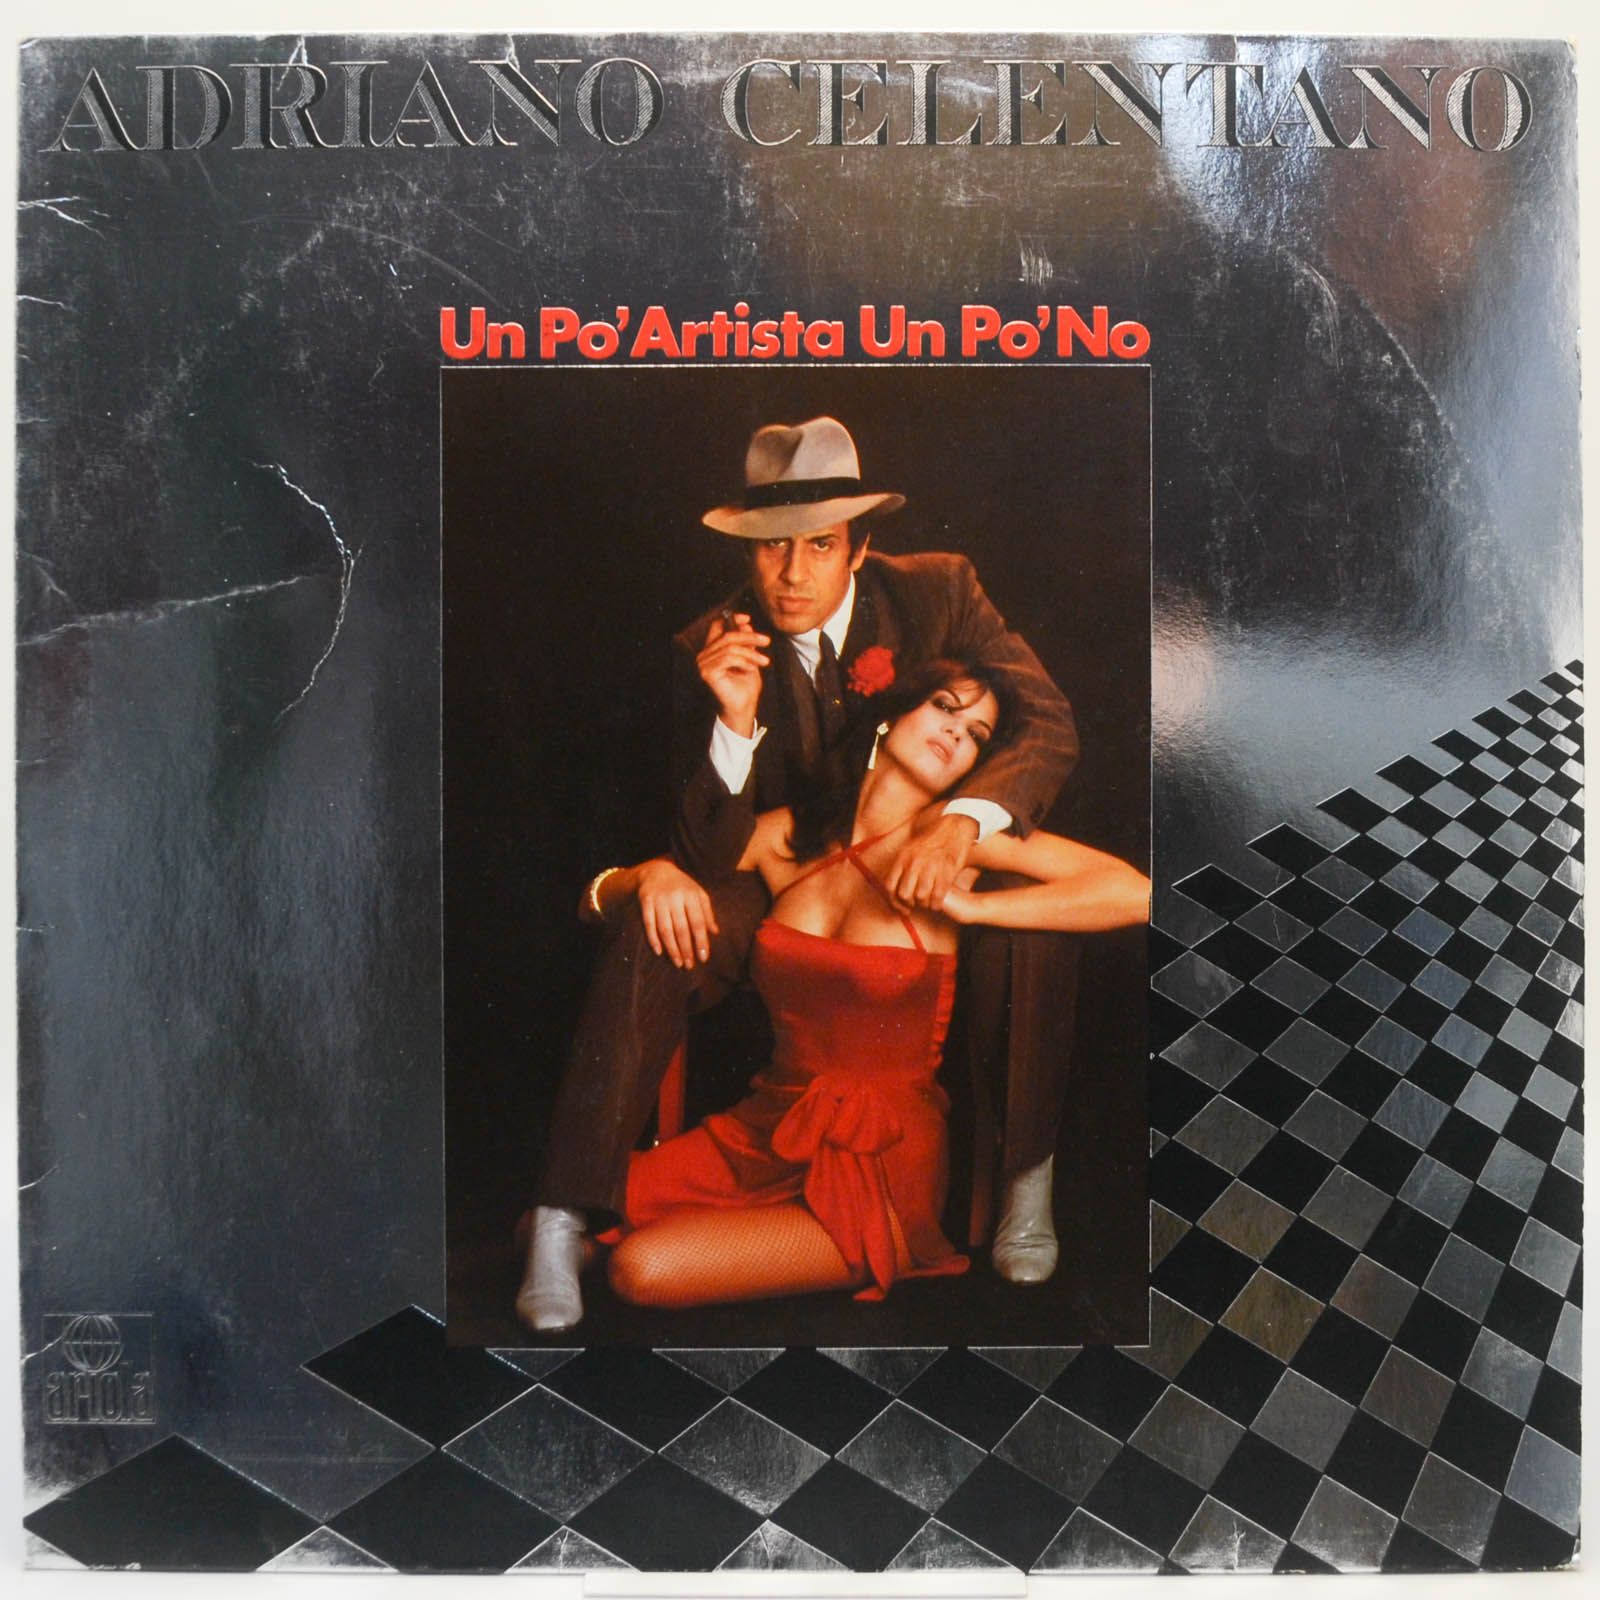 Adriano Celentano — Un Po' Artista Un Po' No, 1980